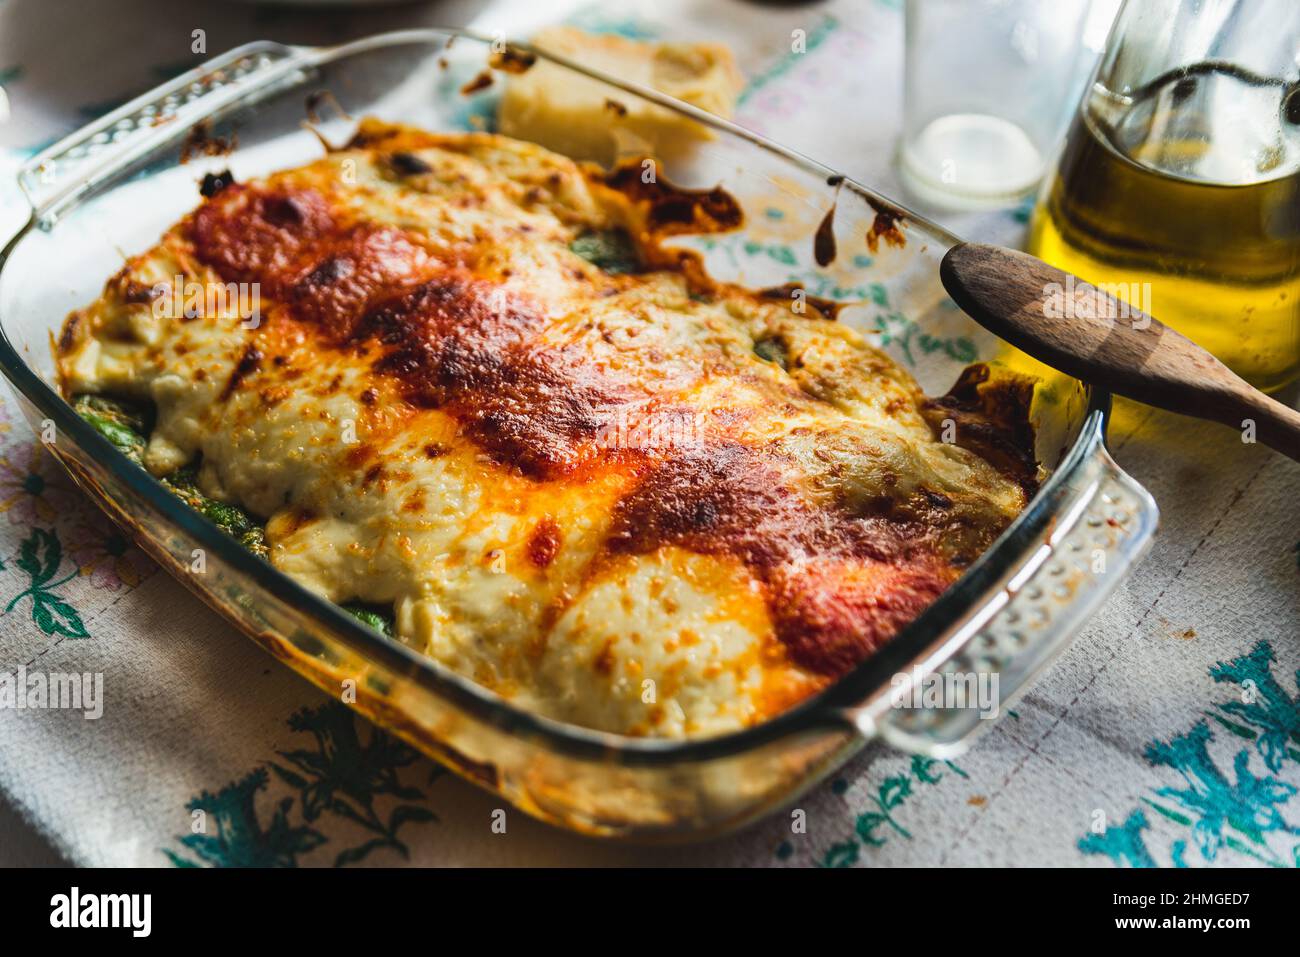 Cannelloni mit Spinat aus nächster Nähe, Tomatensauce, Bachamel und Käse auf Tischtuch. Traditionelle hausgemachte klassische italienische Küche Konzept. Stockfoto